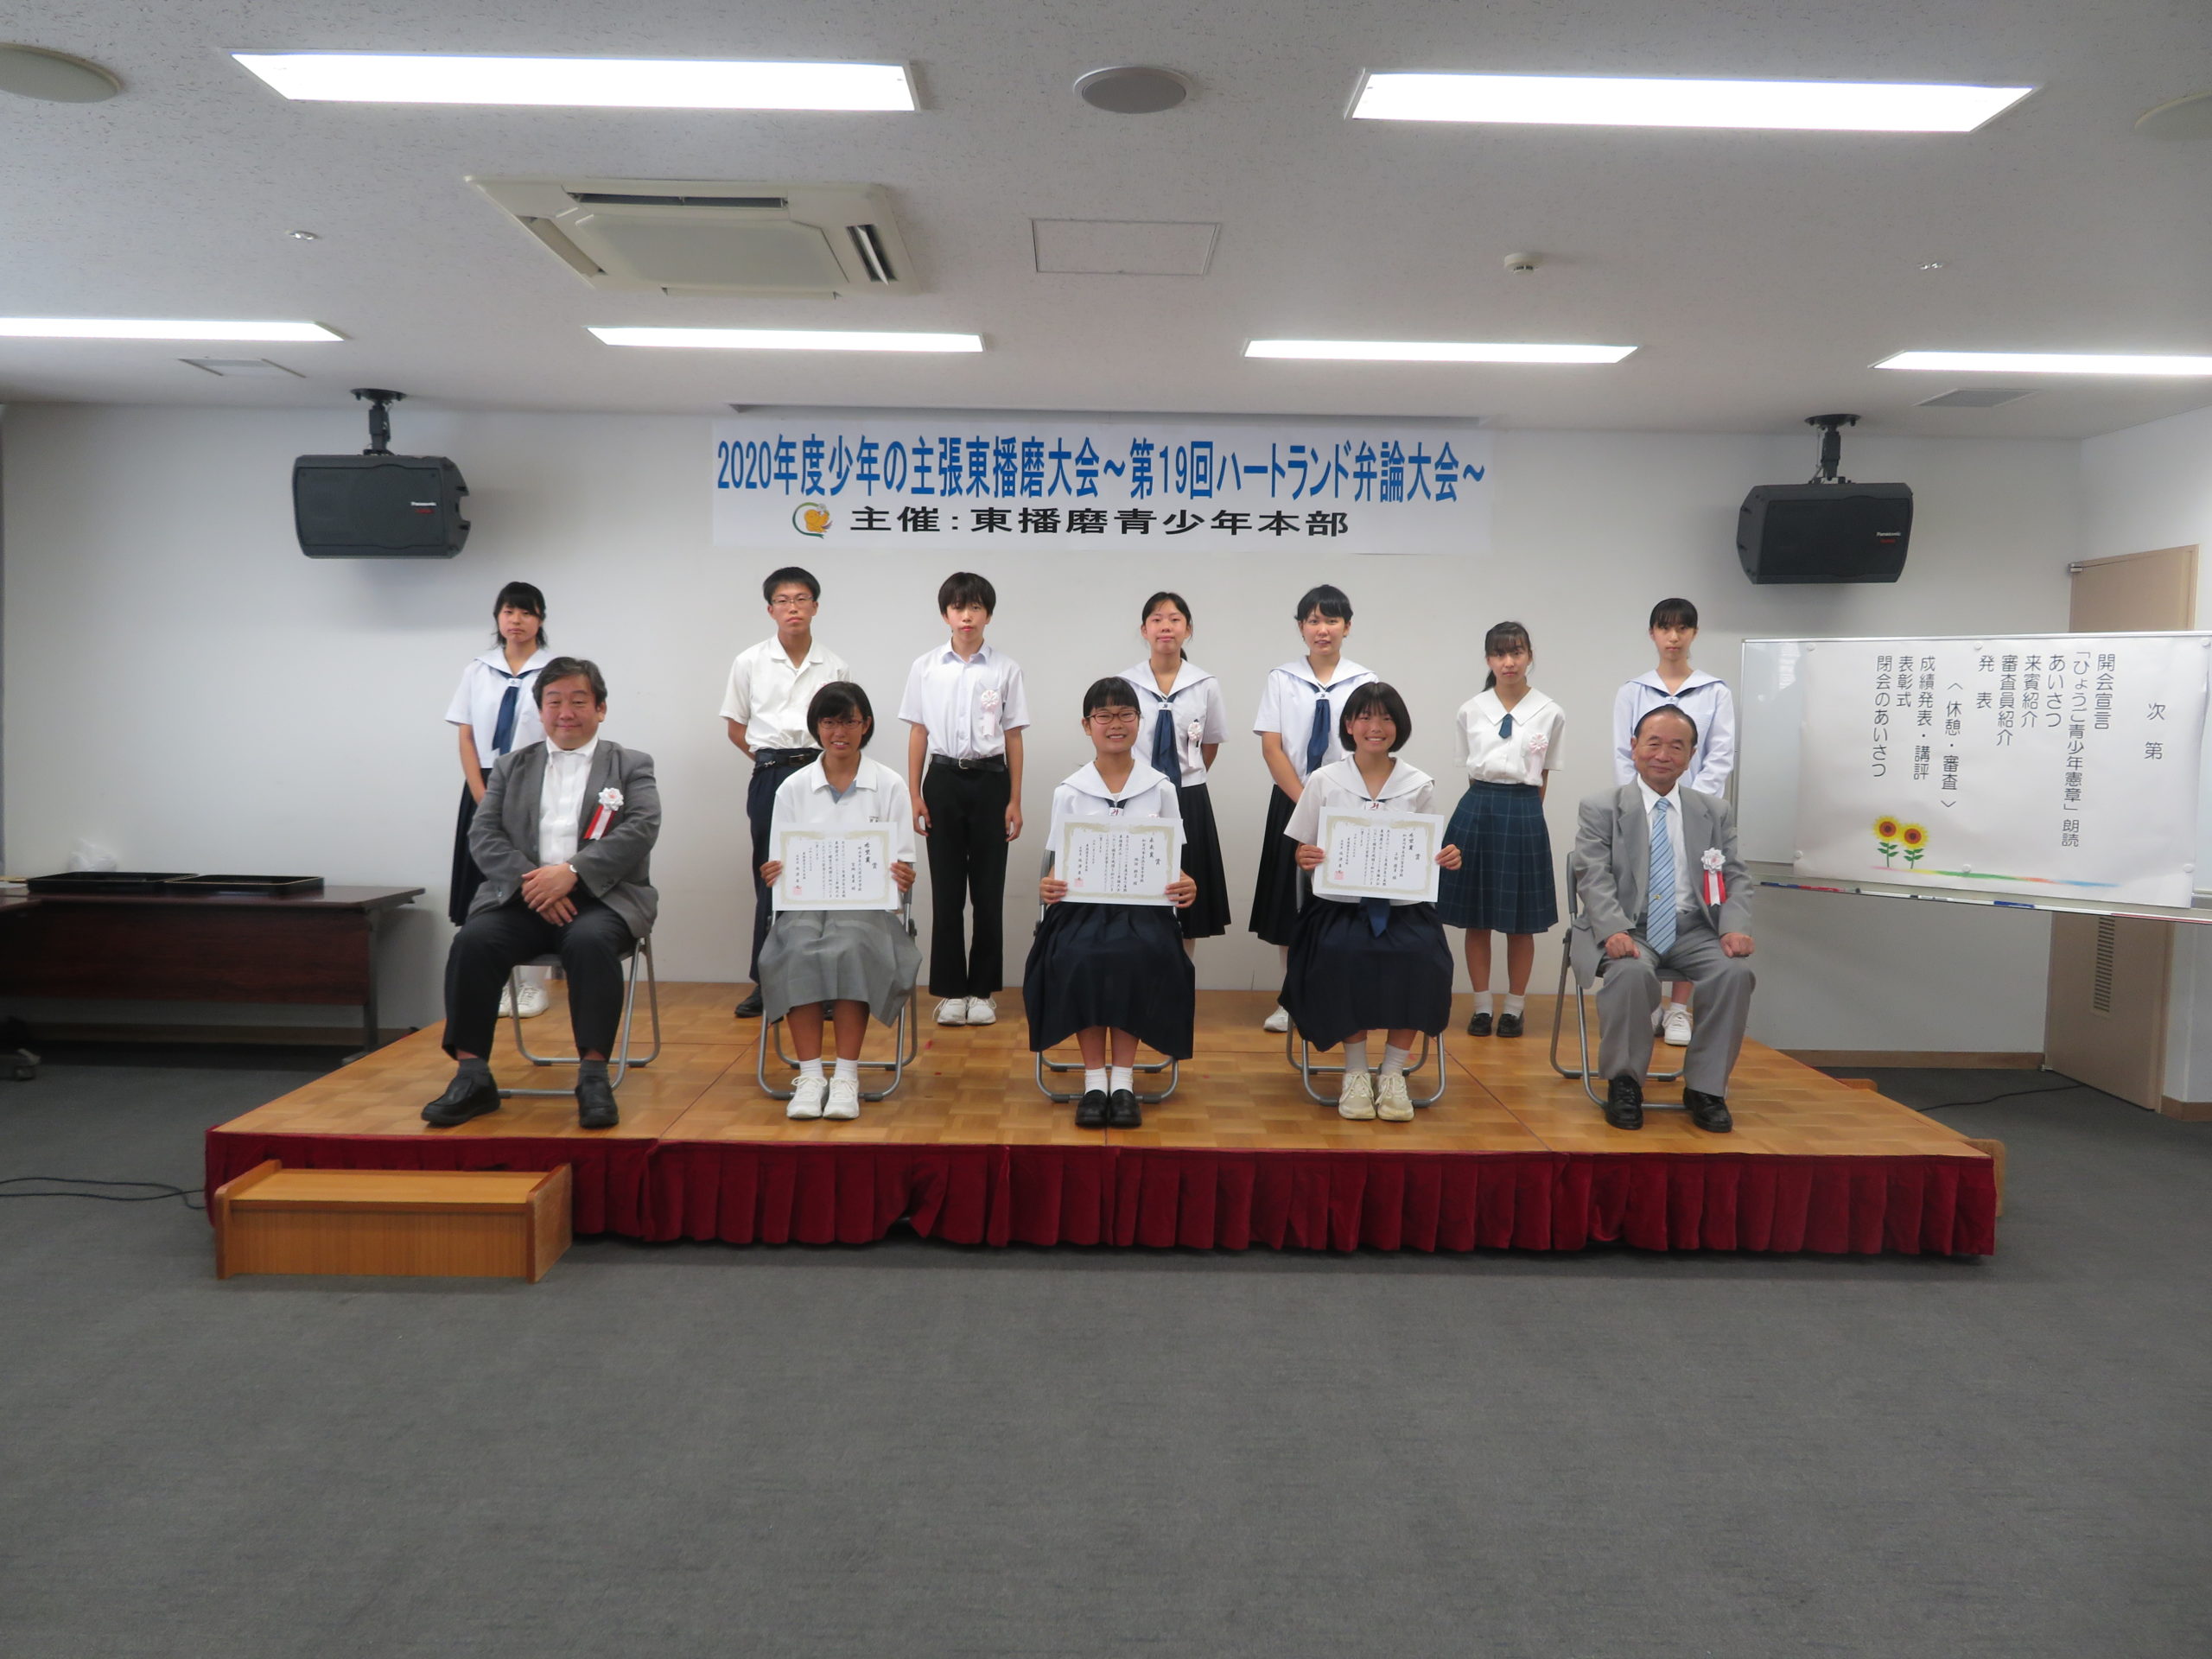 東播磨 ２０２０年度少年の主張東播磨大会ー第１９回ハートランド弁論大会ー を開催しました 兵庫県青少年本部